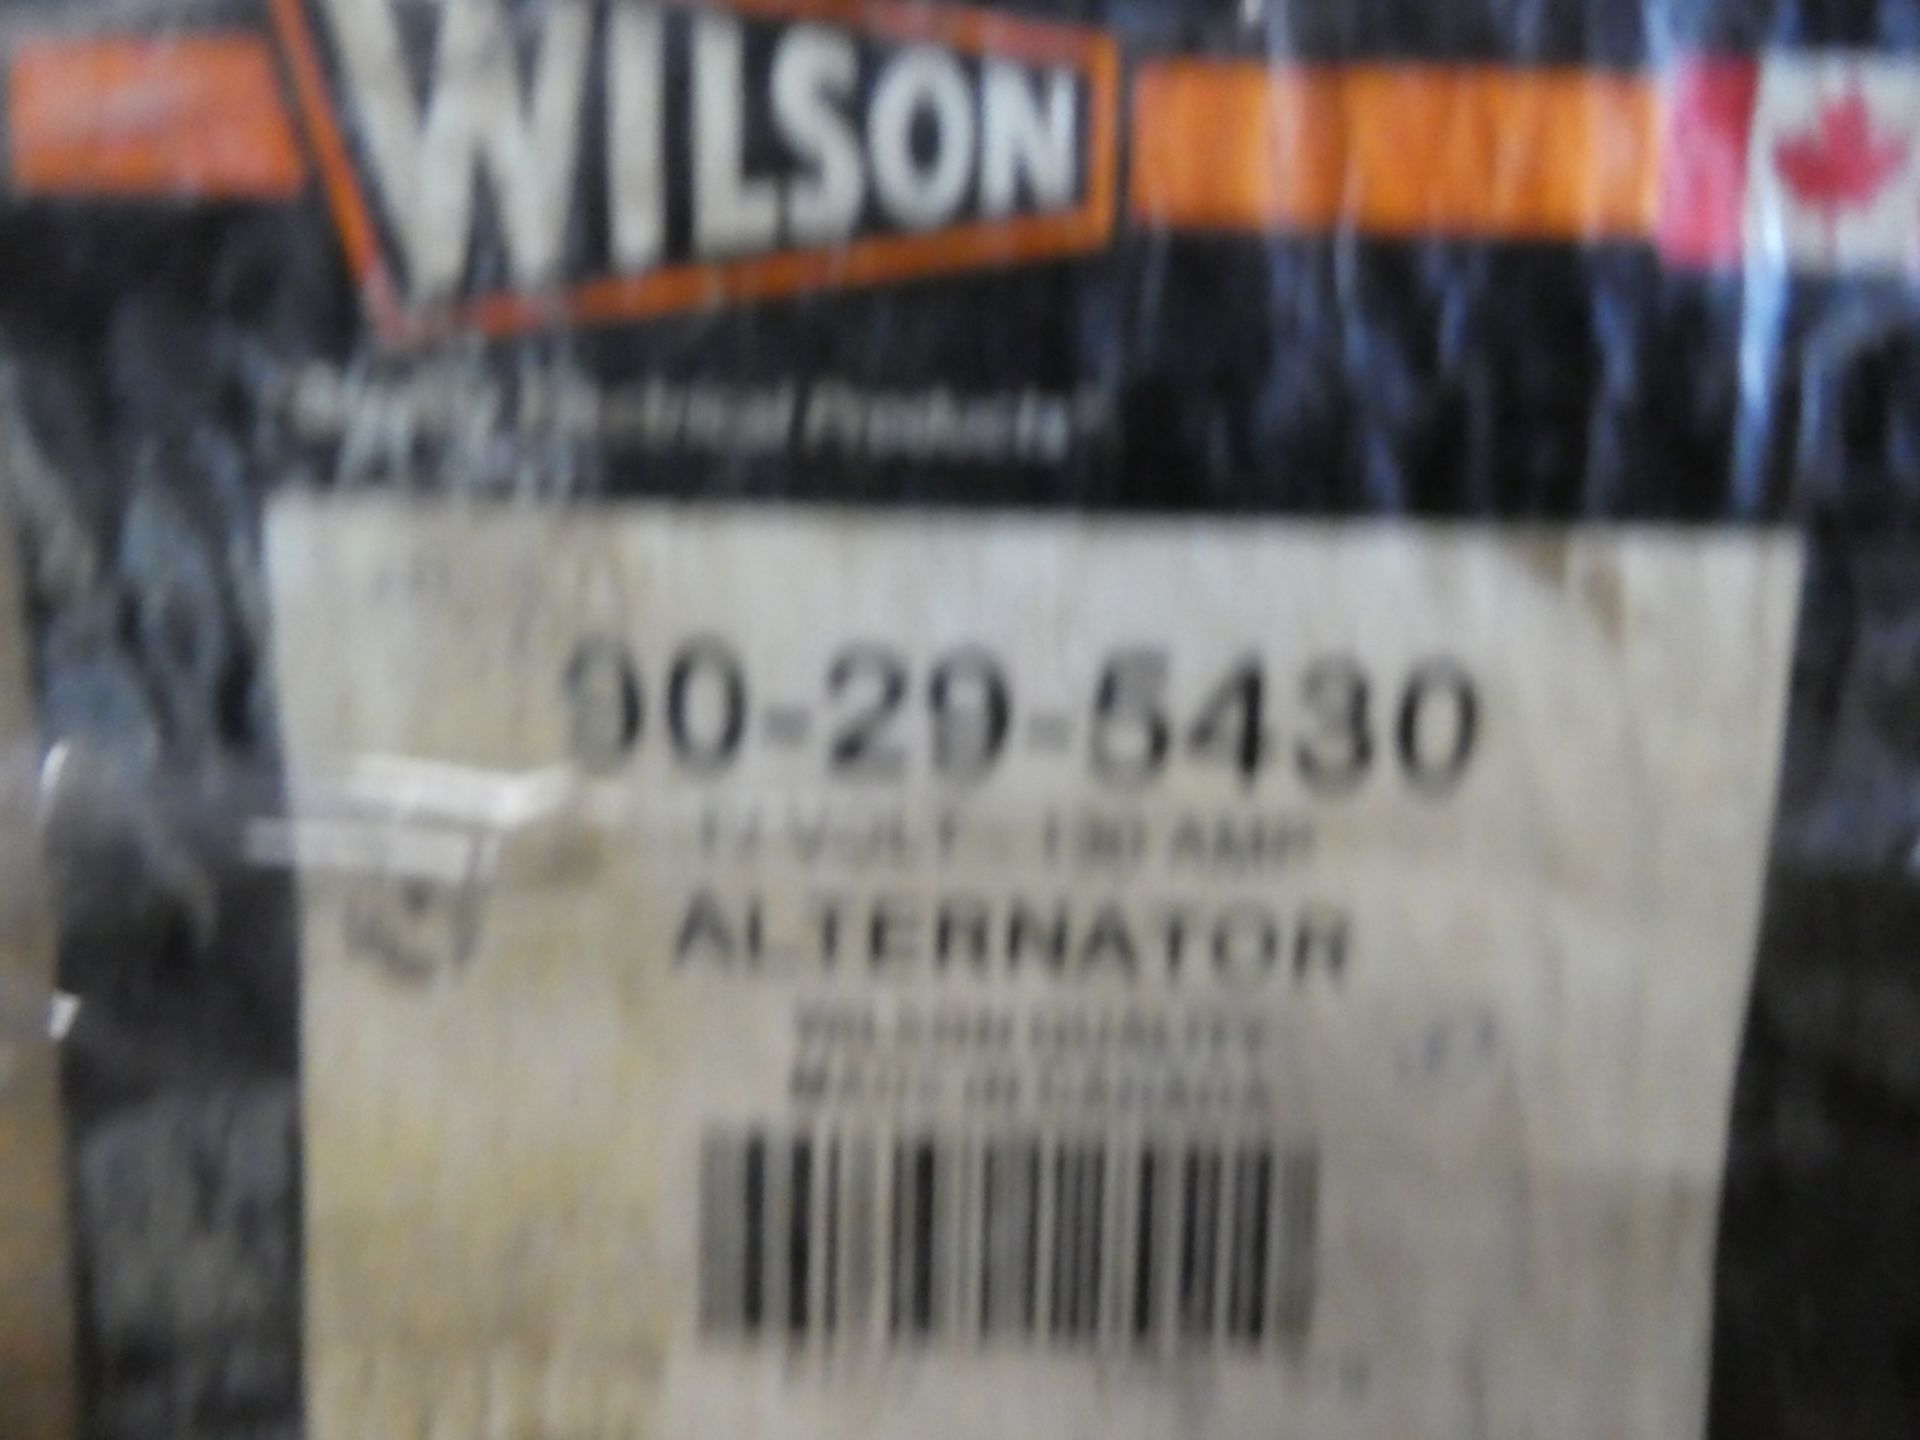 WILSON 12V 130 AMP ALTERNATOR, PART #90-29-5430 (NEW IN BOX) - Image 2 of 3